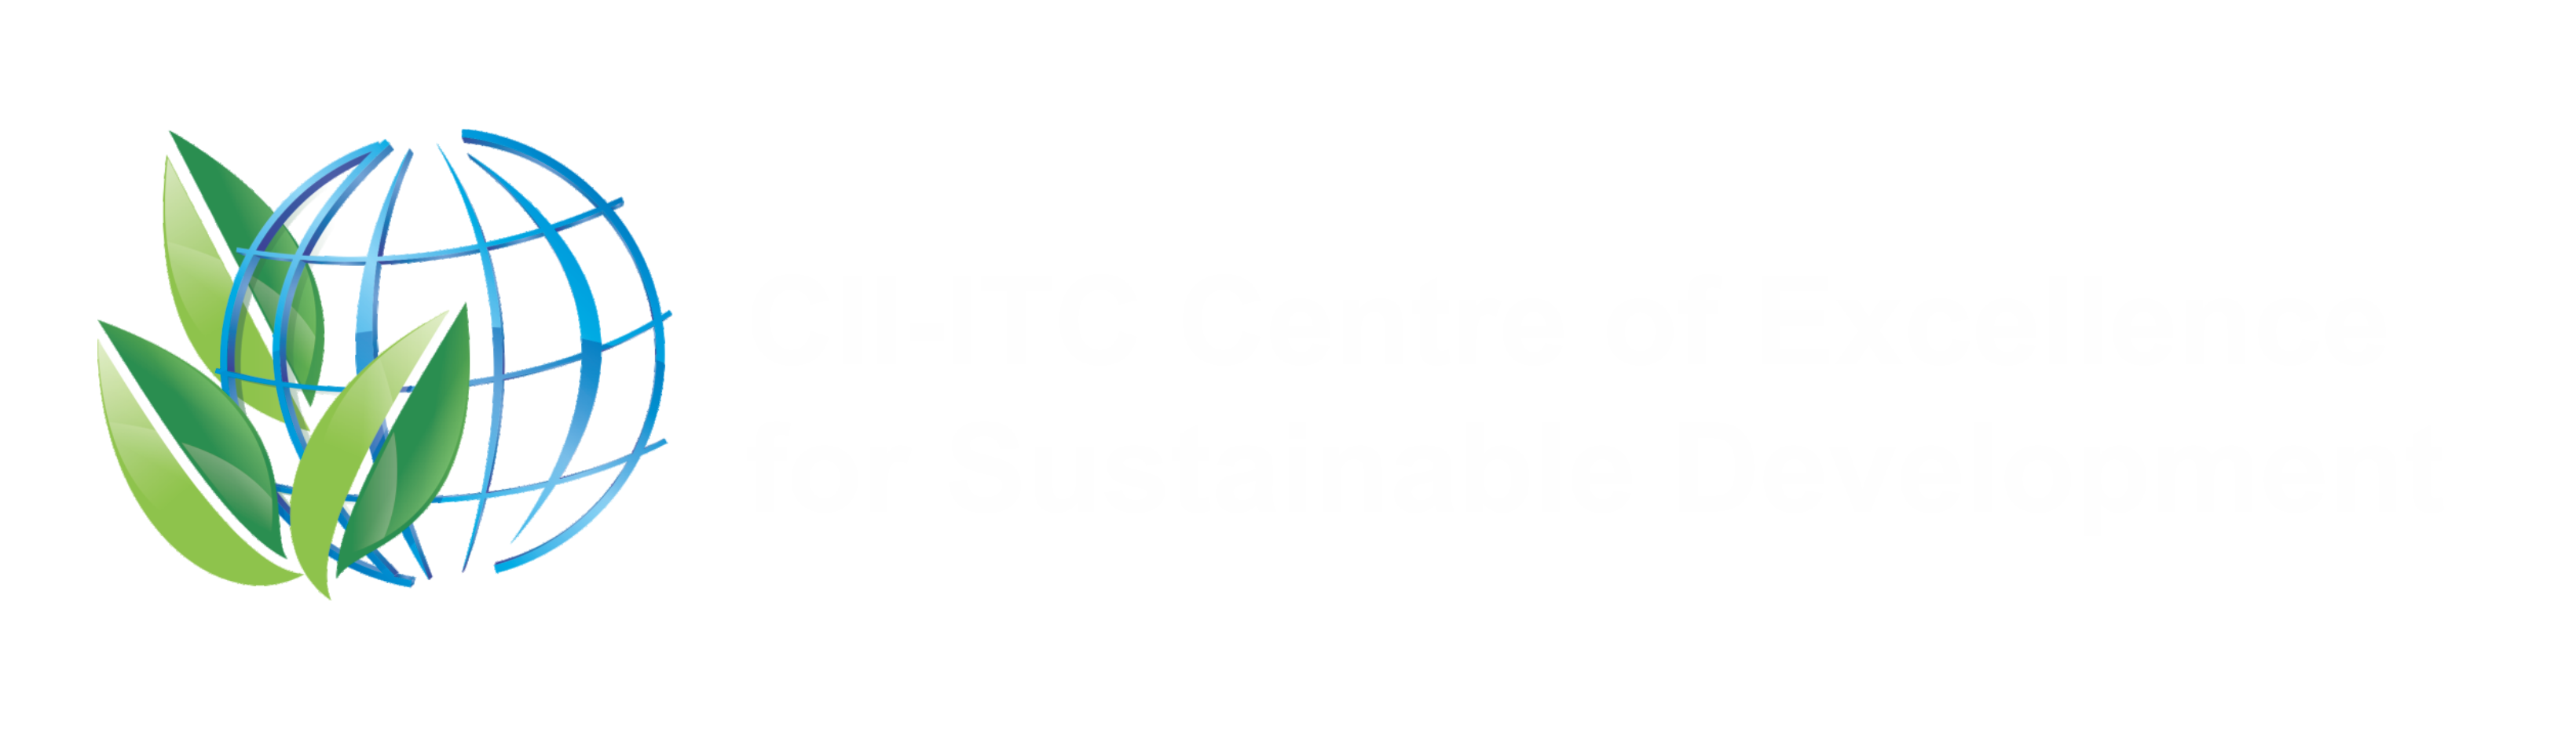 CII-ITC Center of Excellence logo